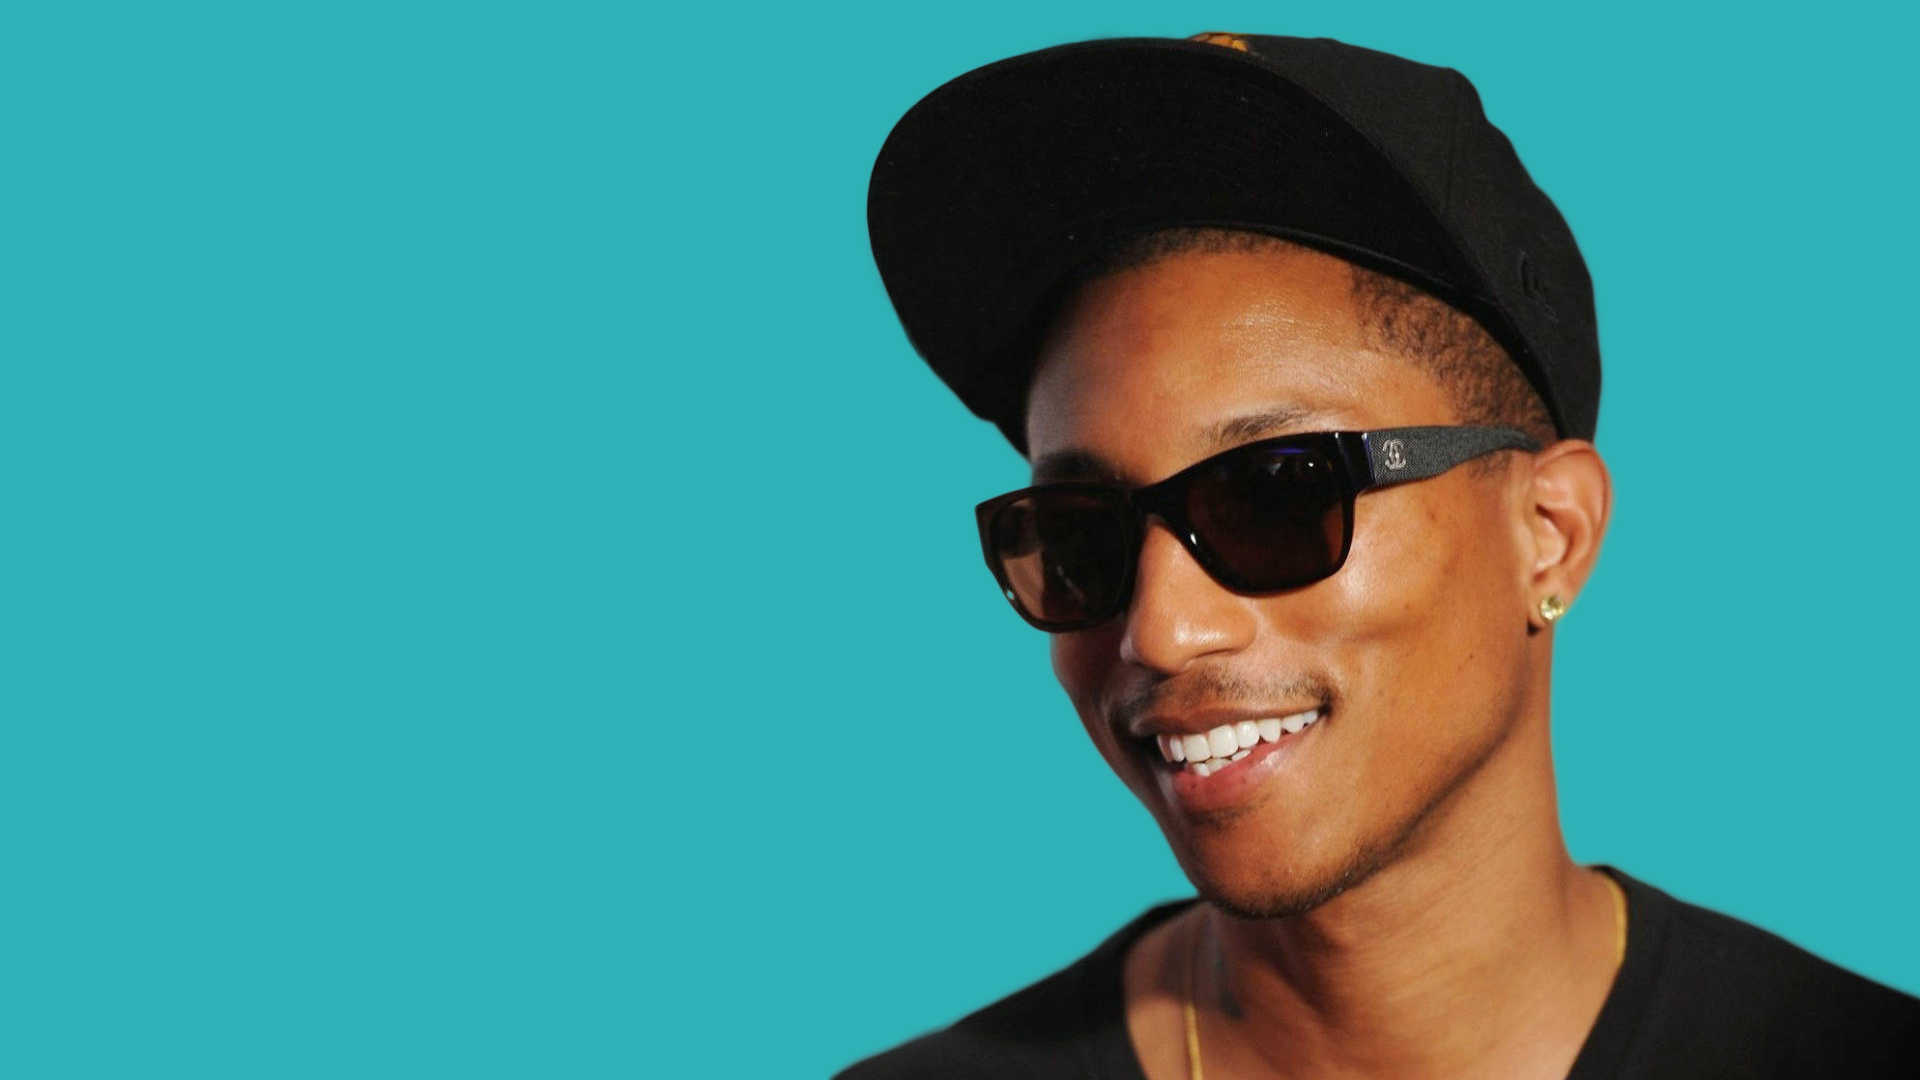 Pharrell Williams, Celeb smile, Grammys 2015, CFDA fashion icon, 1920x1080 Full HD Desktop